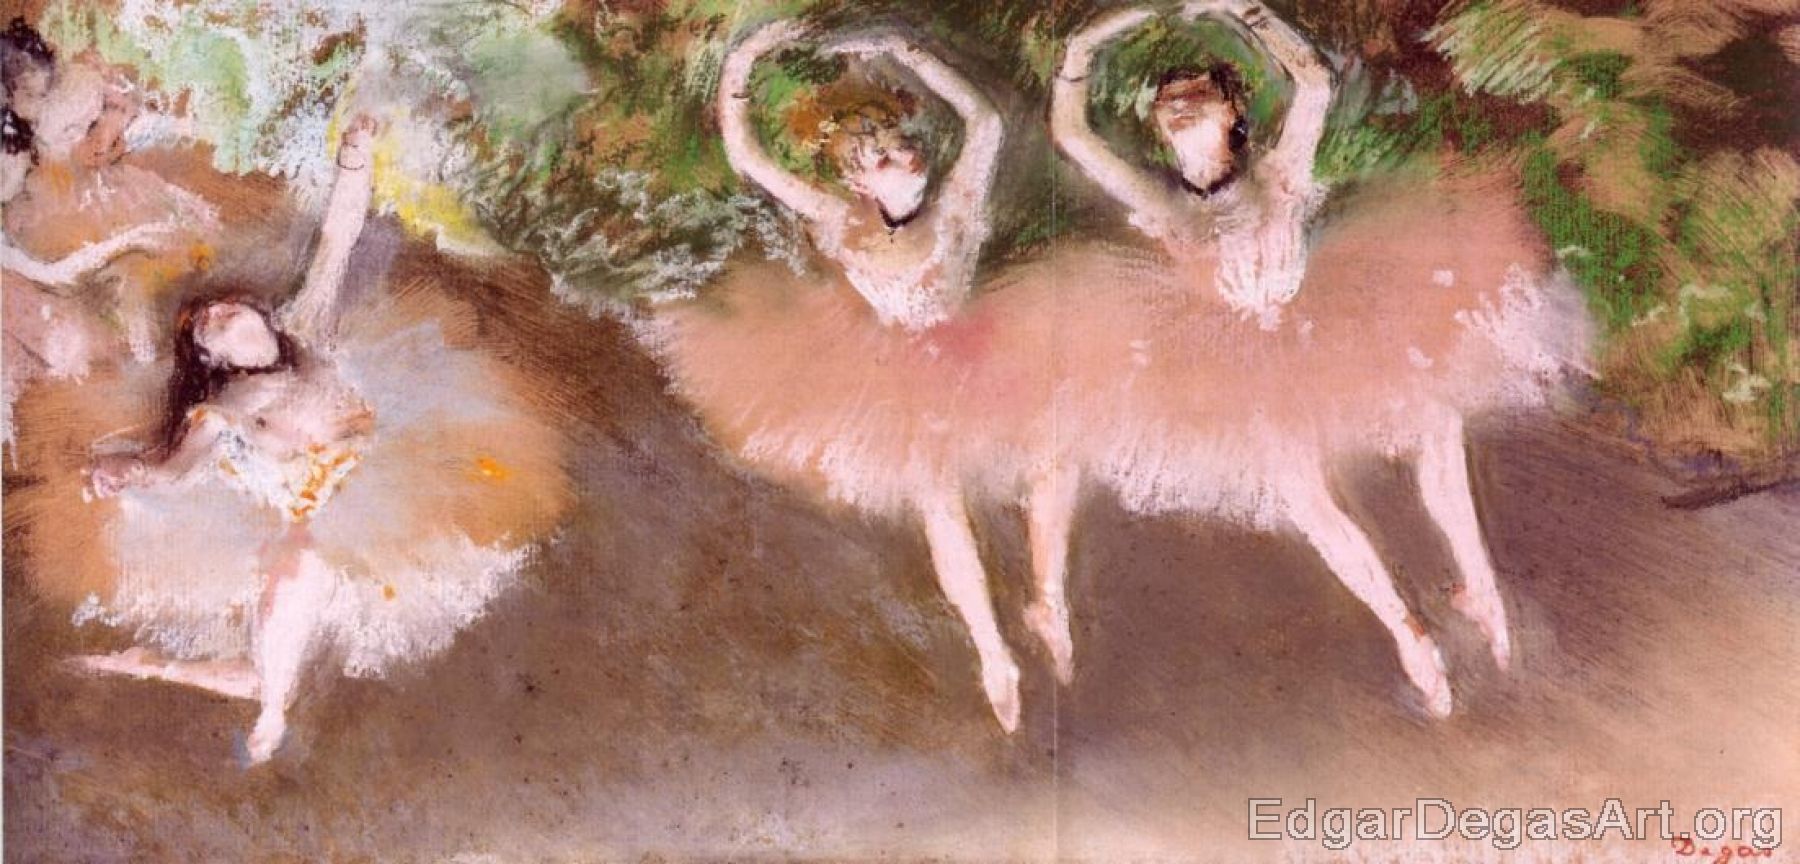 Ballet Scene